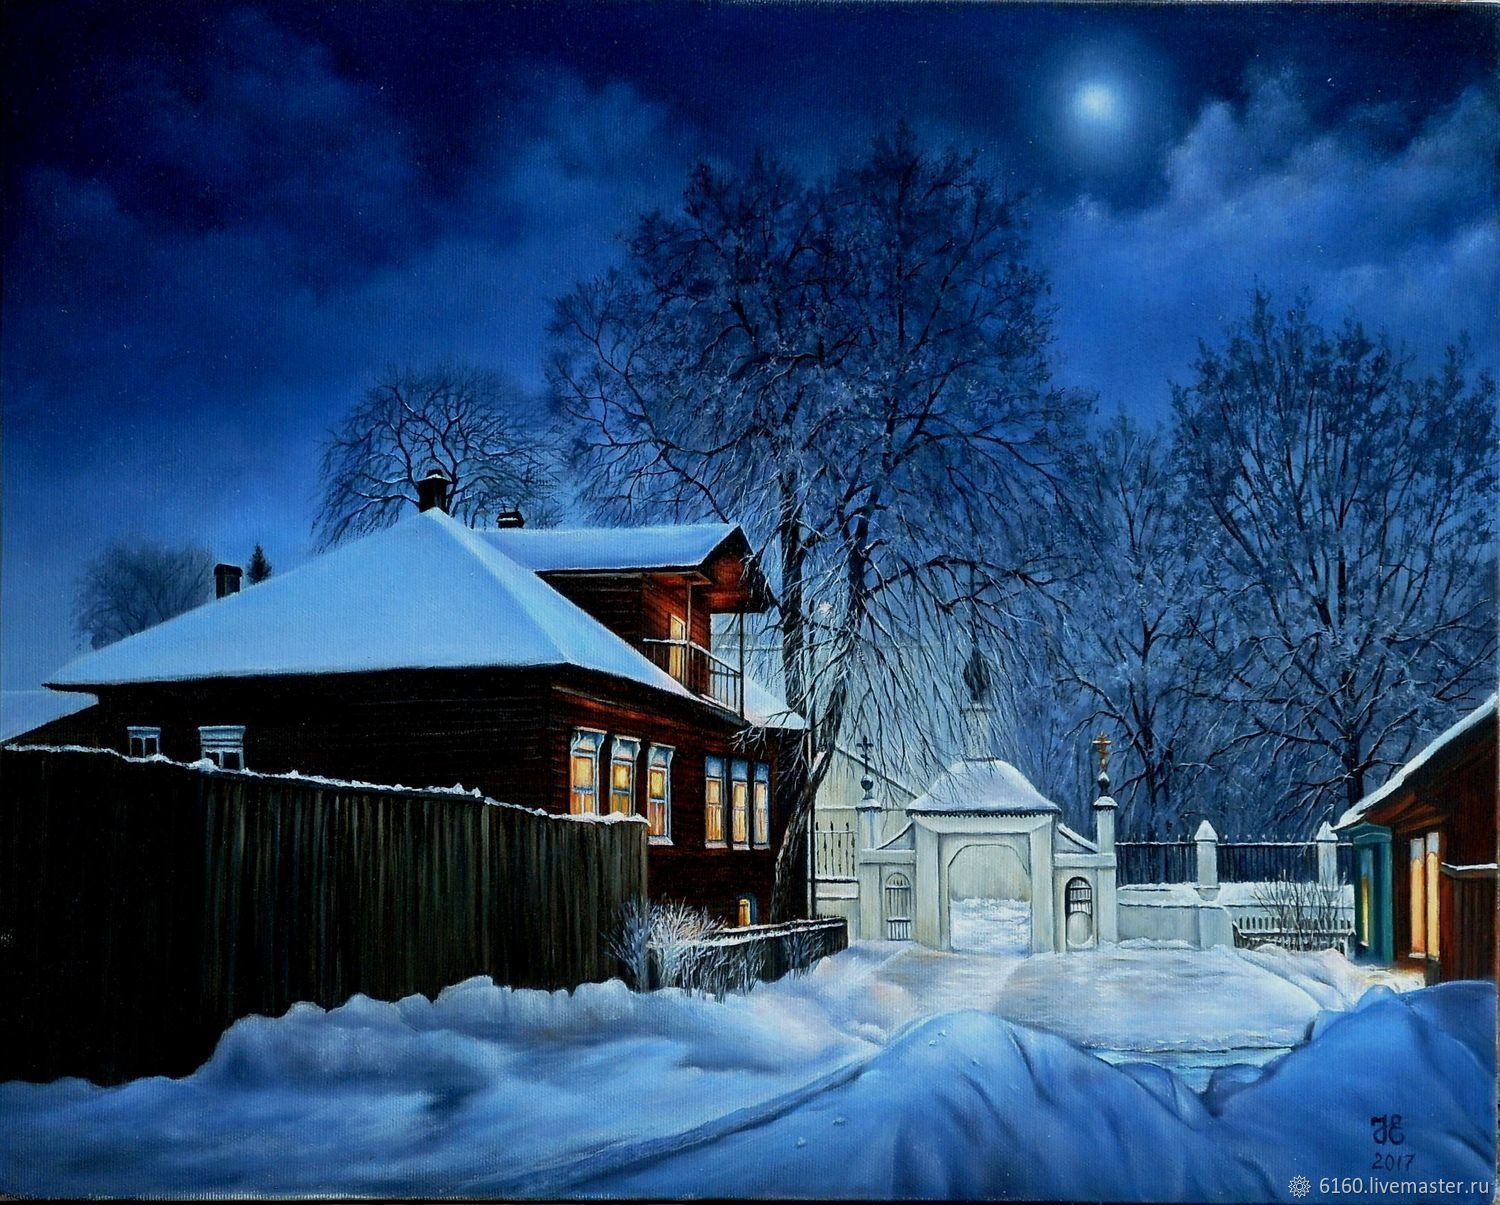 Прочитать зимний вечер. Зимняя ночь в деревне Никитин. Зима , ночь , деревня , храм.. Деревня зимой. Зима в деревне.